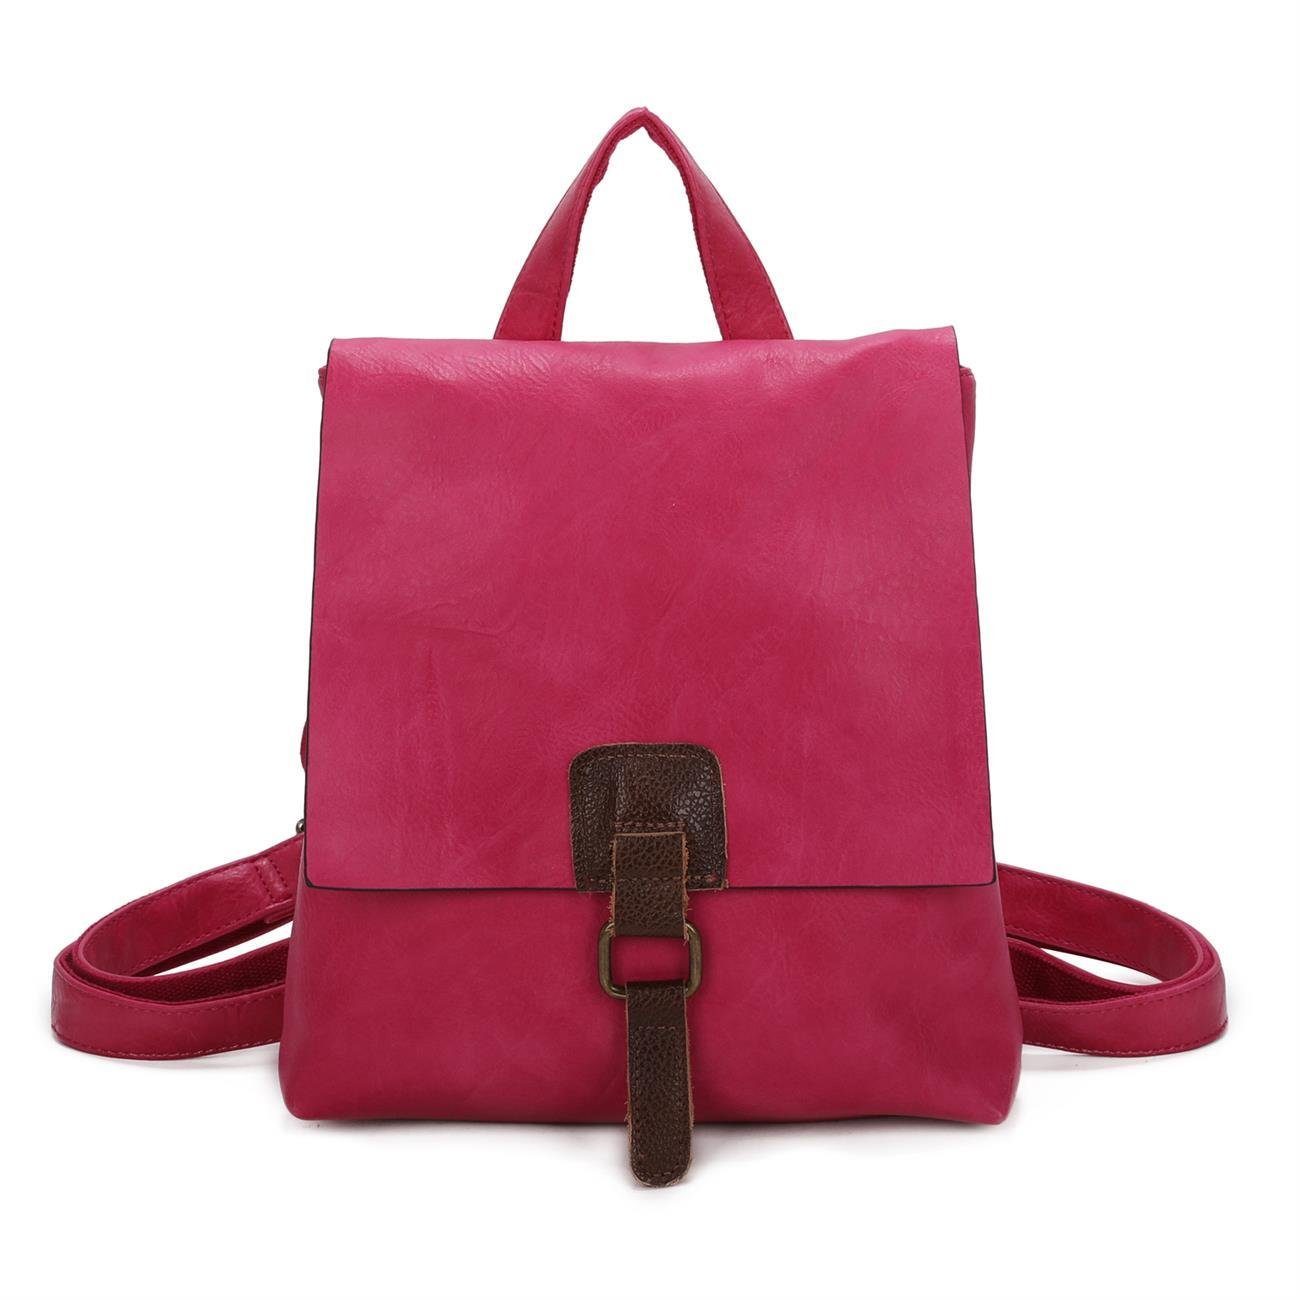 ITALYSHOP24 Rucksack Pink Tasche Vintage als Schultertasche, tragbar Umhängetasche Crossover Damen Messenger, Rucksack